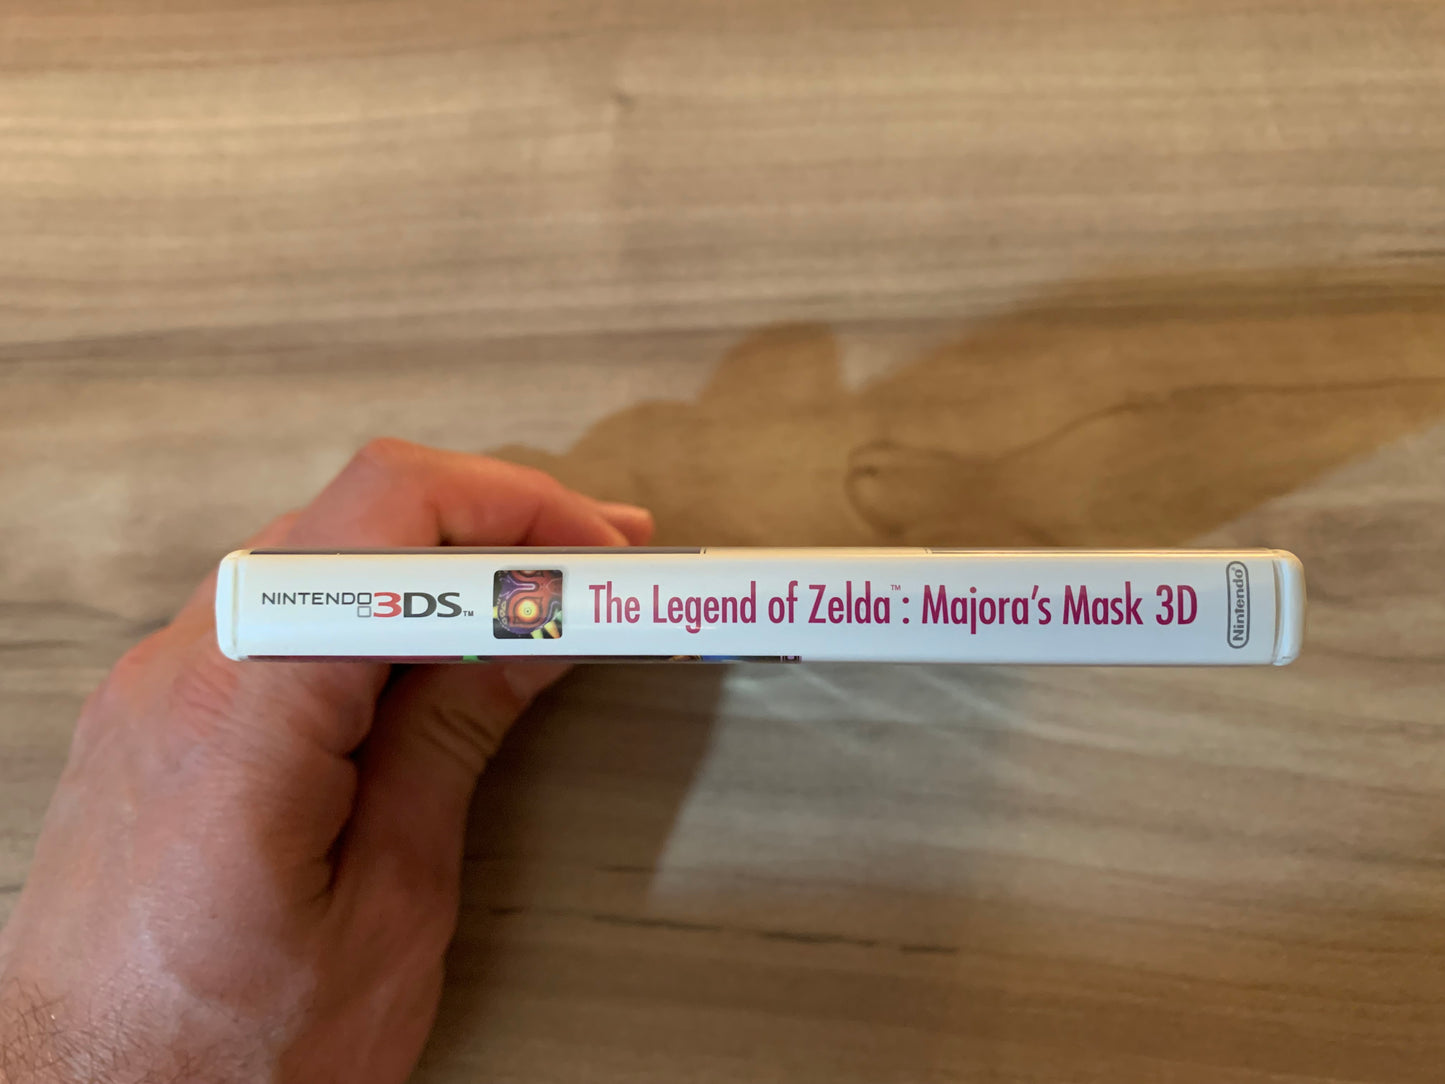 NiNTENDO 3DS | THE LEGEND OF ZELDA MAJORAS MASK 3D